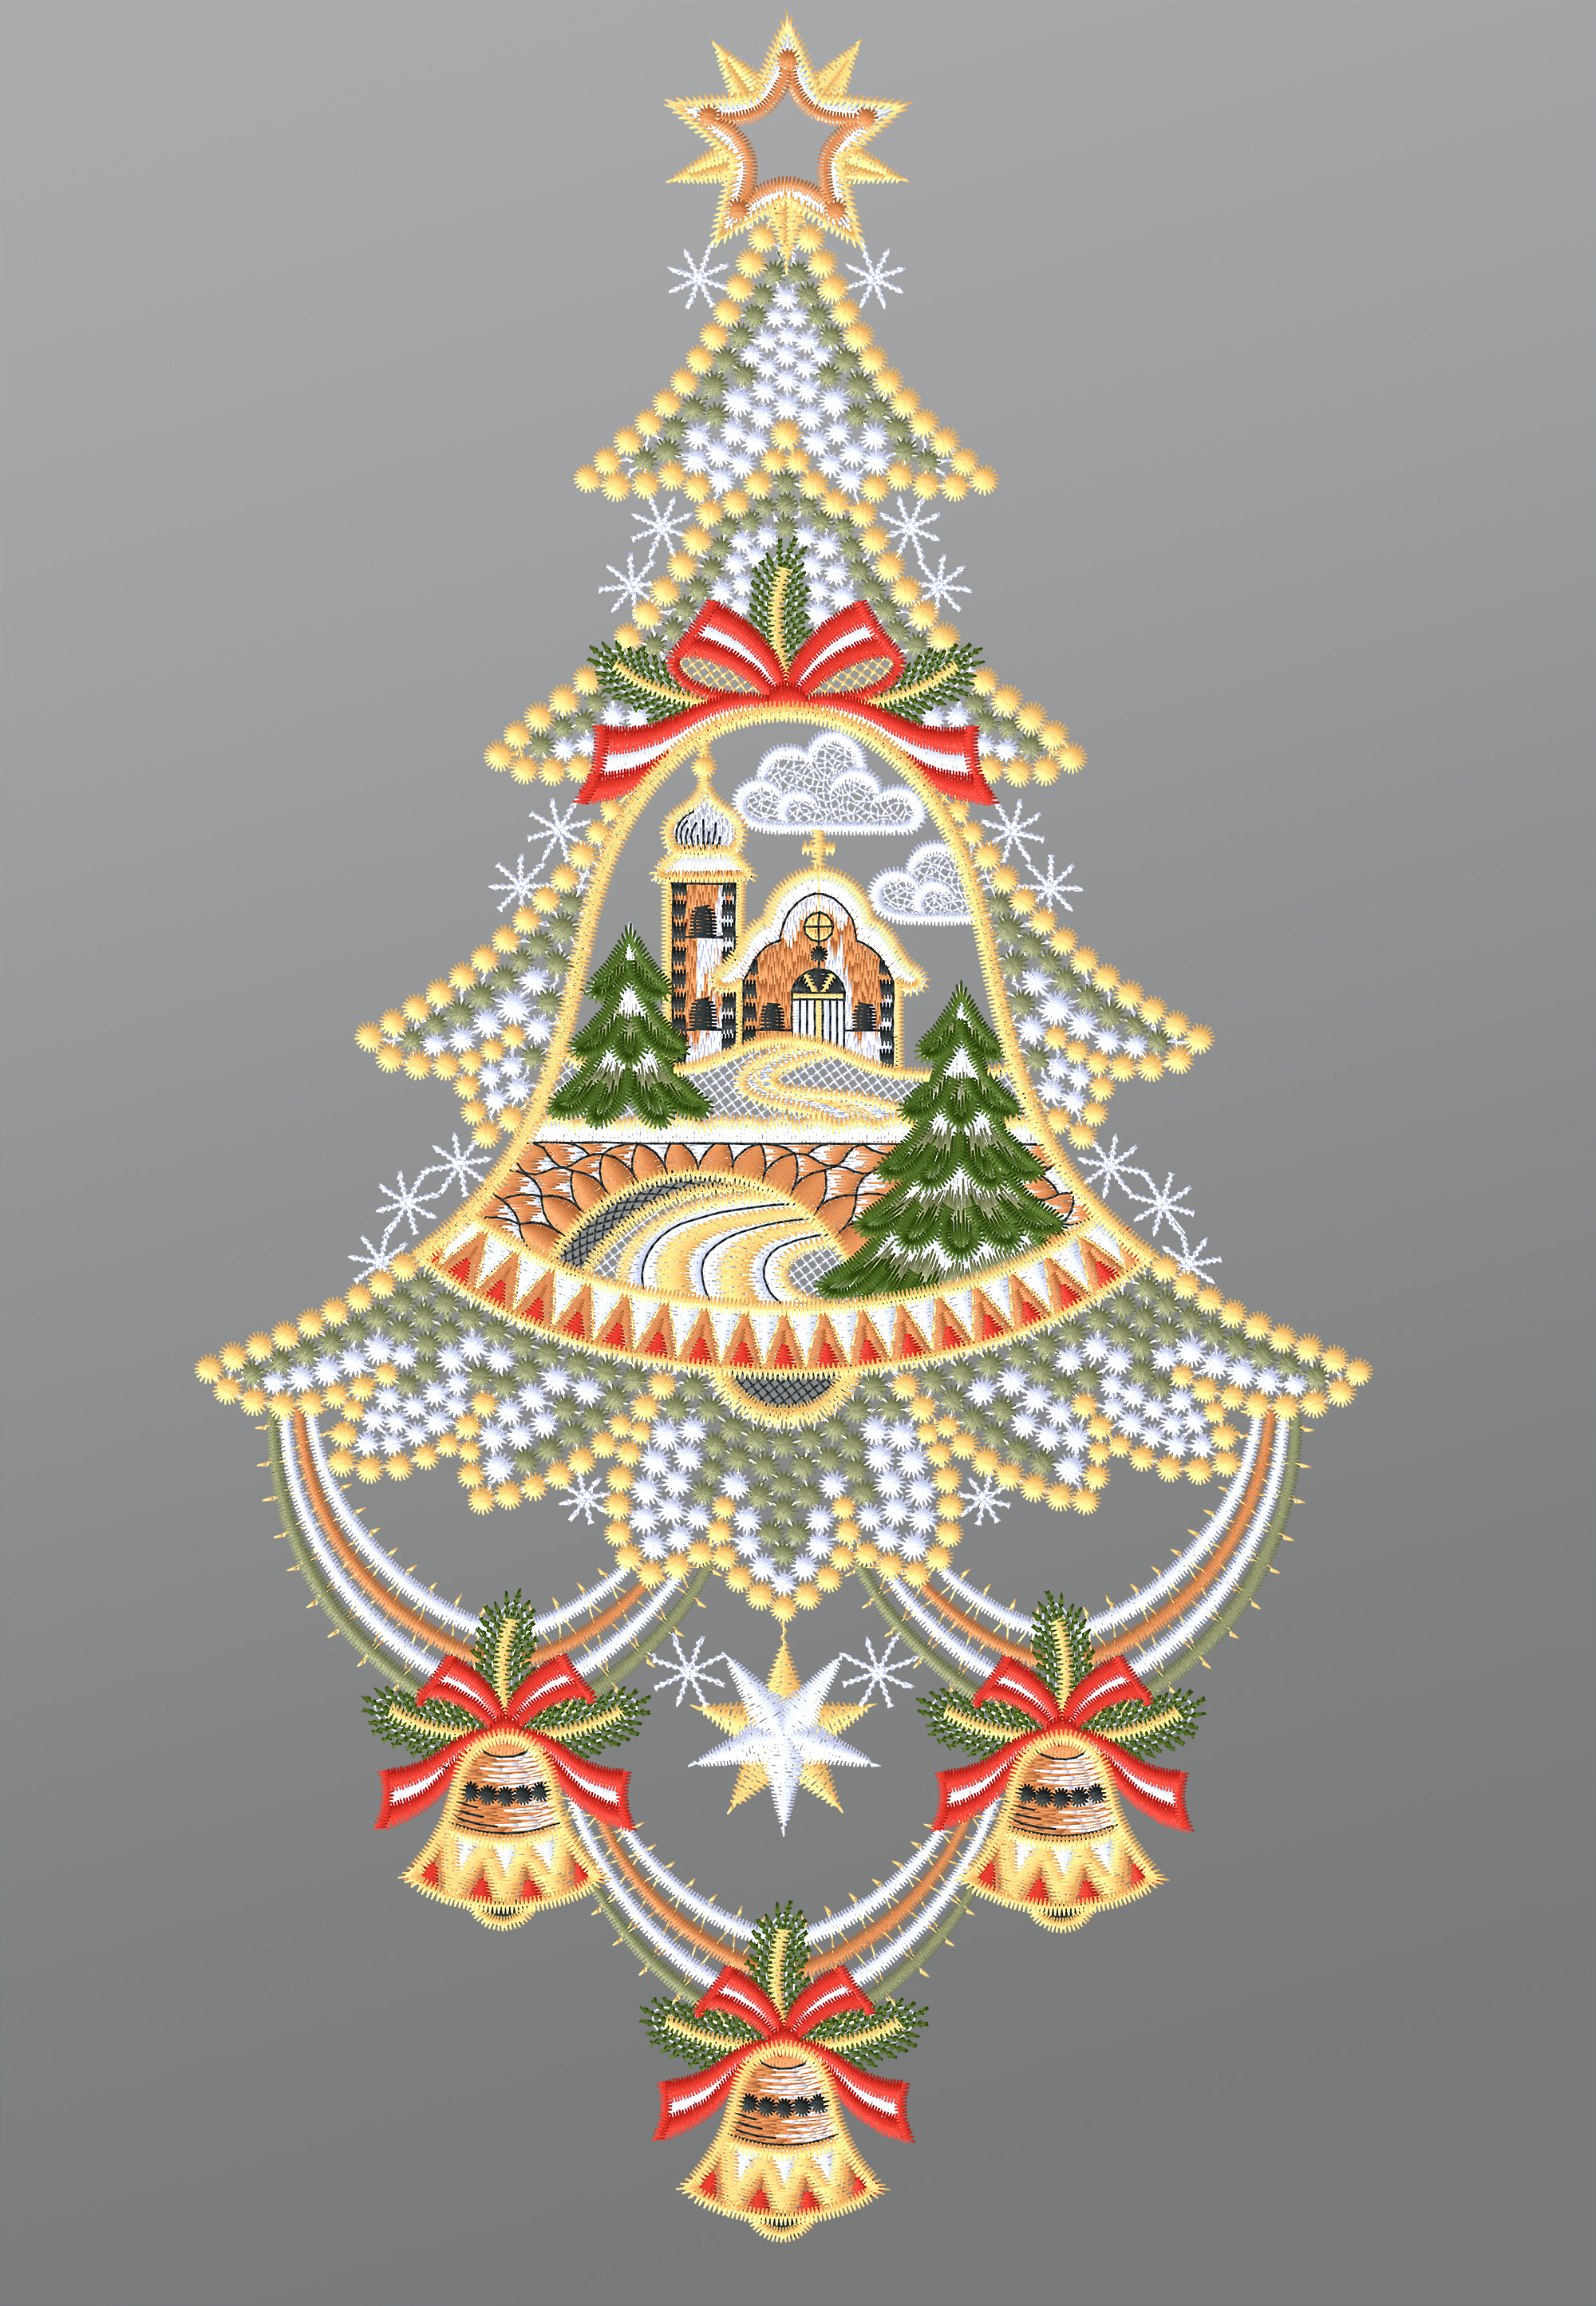 ArtikelbildFensterbild aus Plauener Spitze - Weihnachtsbaum mit Kirche #1W mehrfarbig